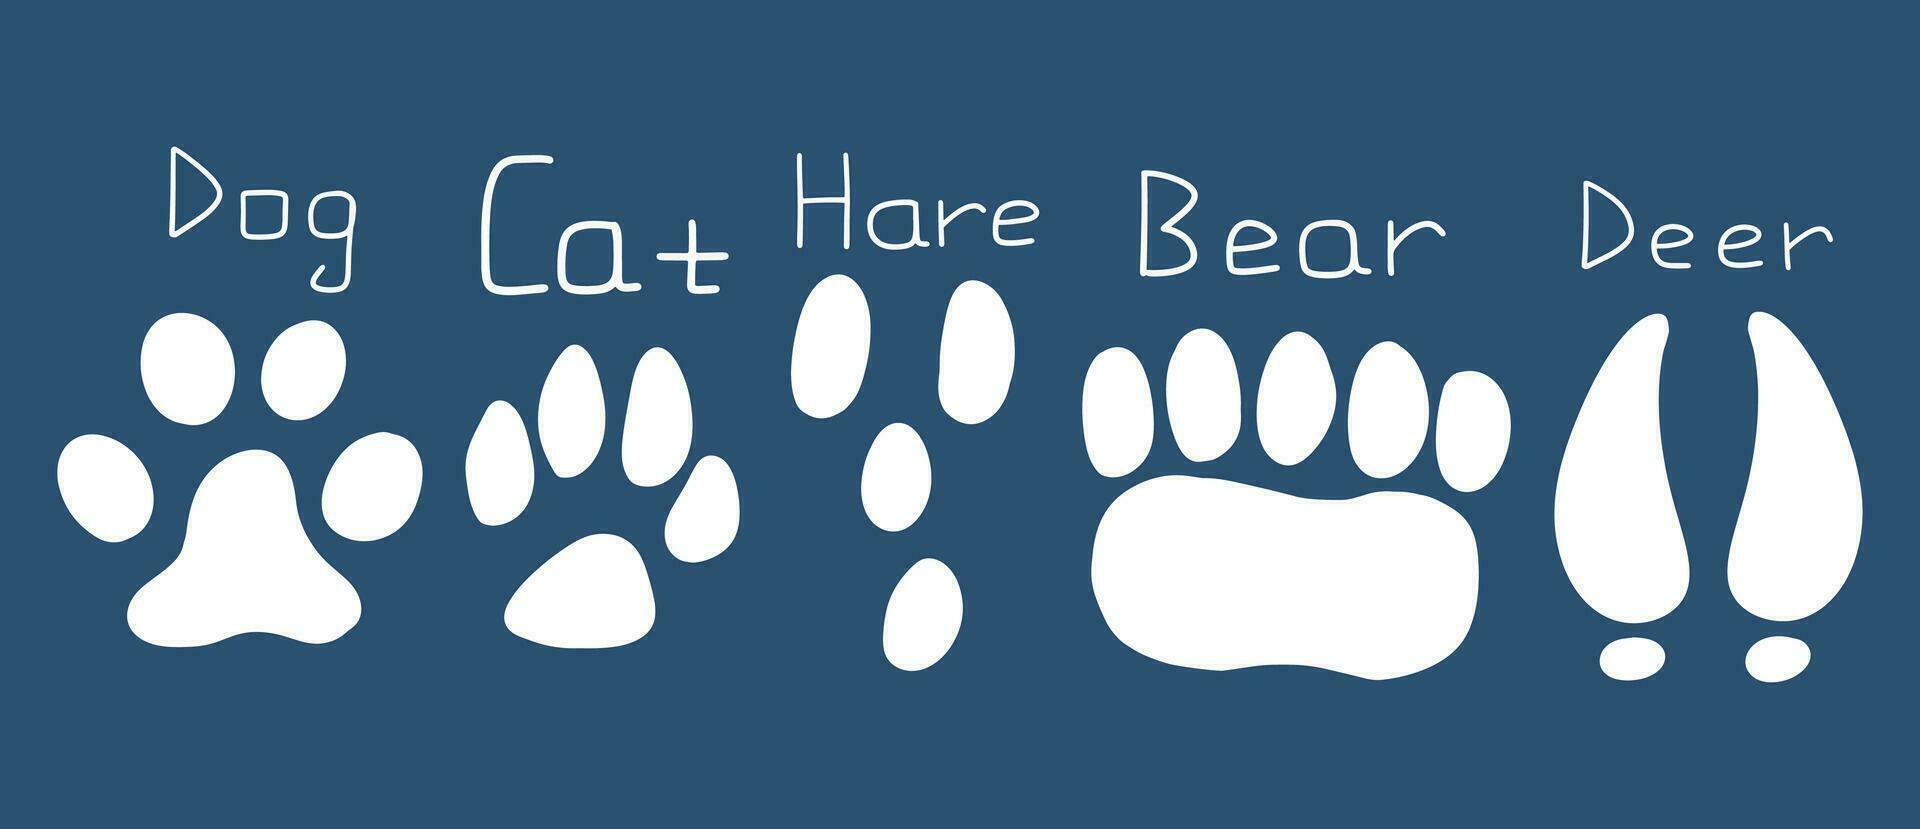 reeks van voetafdrukken van verschillend dieren, kat, hond, beer, haas, hert. vector hand- getrokken illustratie